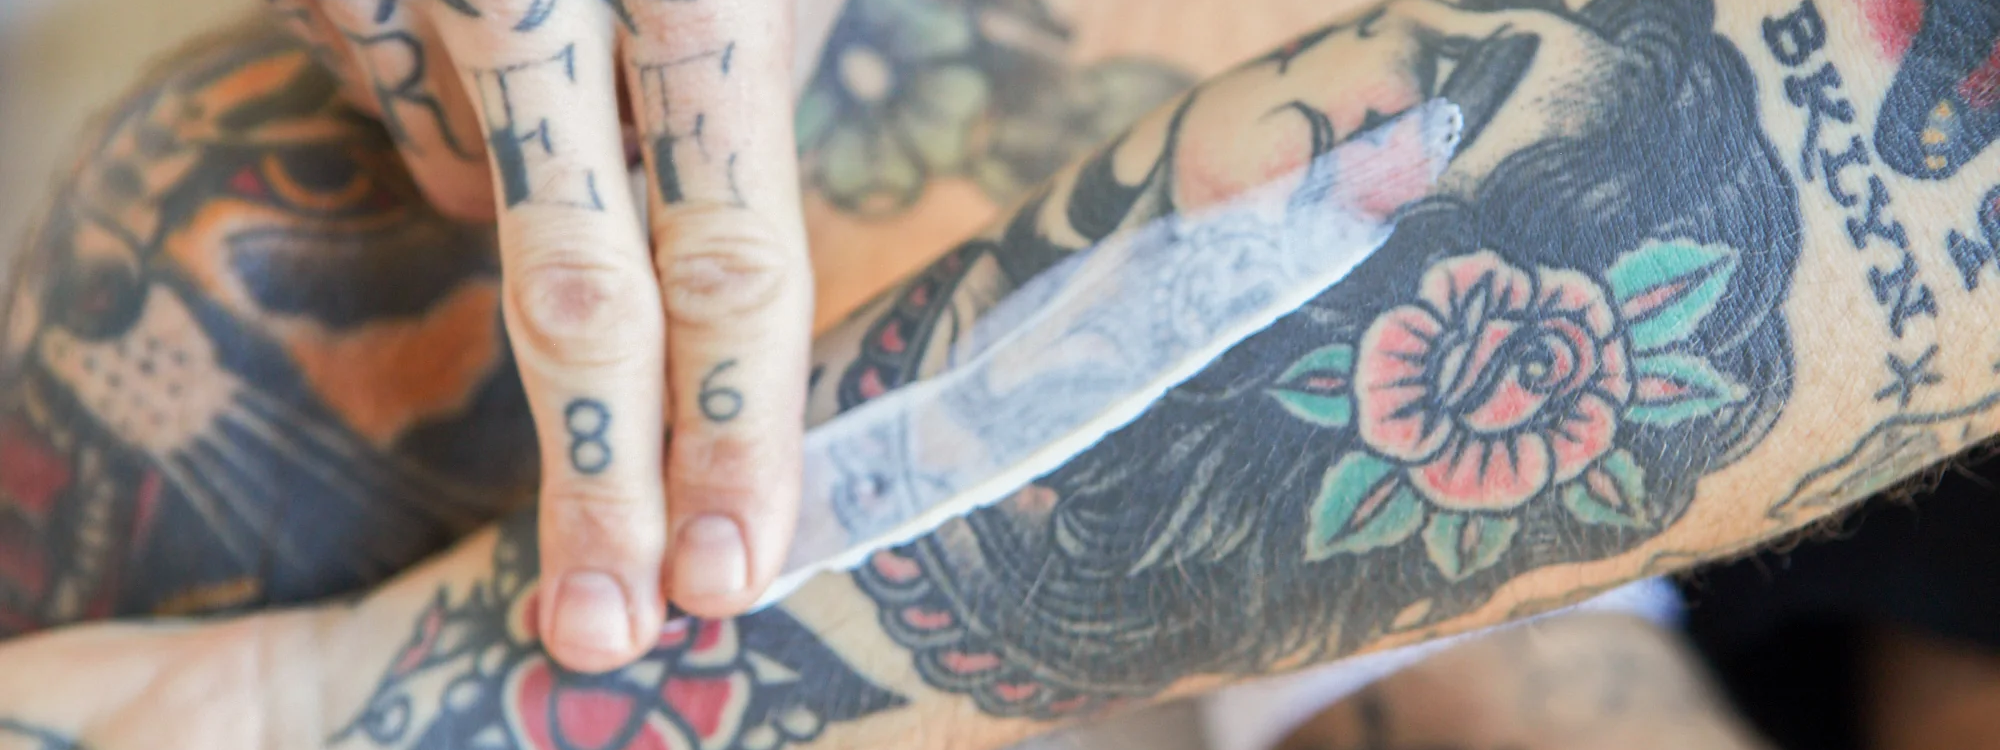 Tattoo aging | Faded tattoo, Healing tattoo, Fresh tattoo